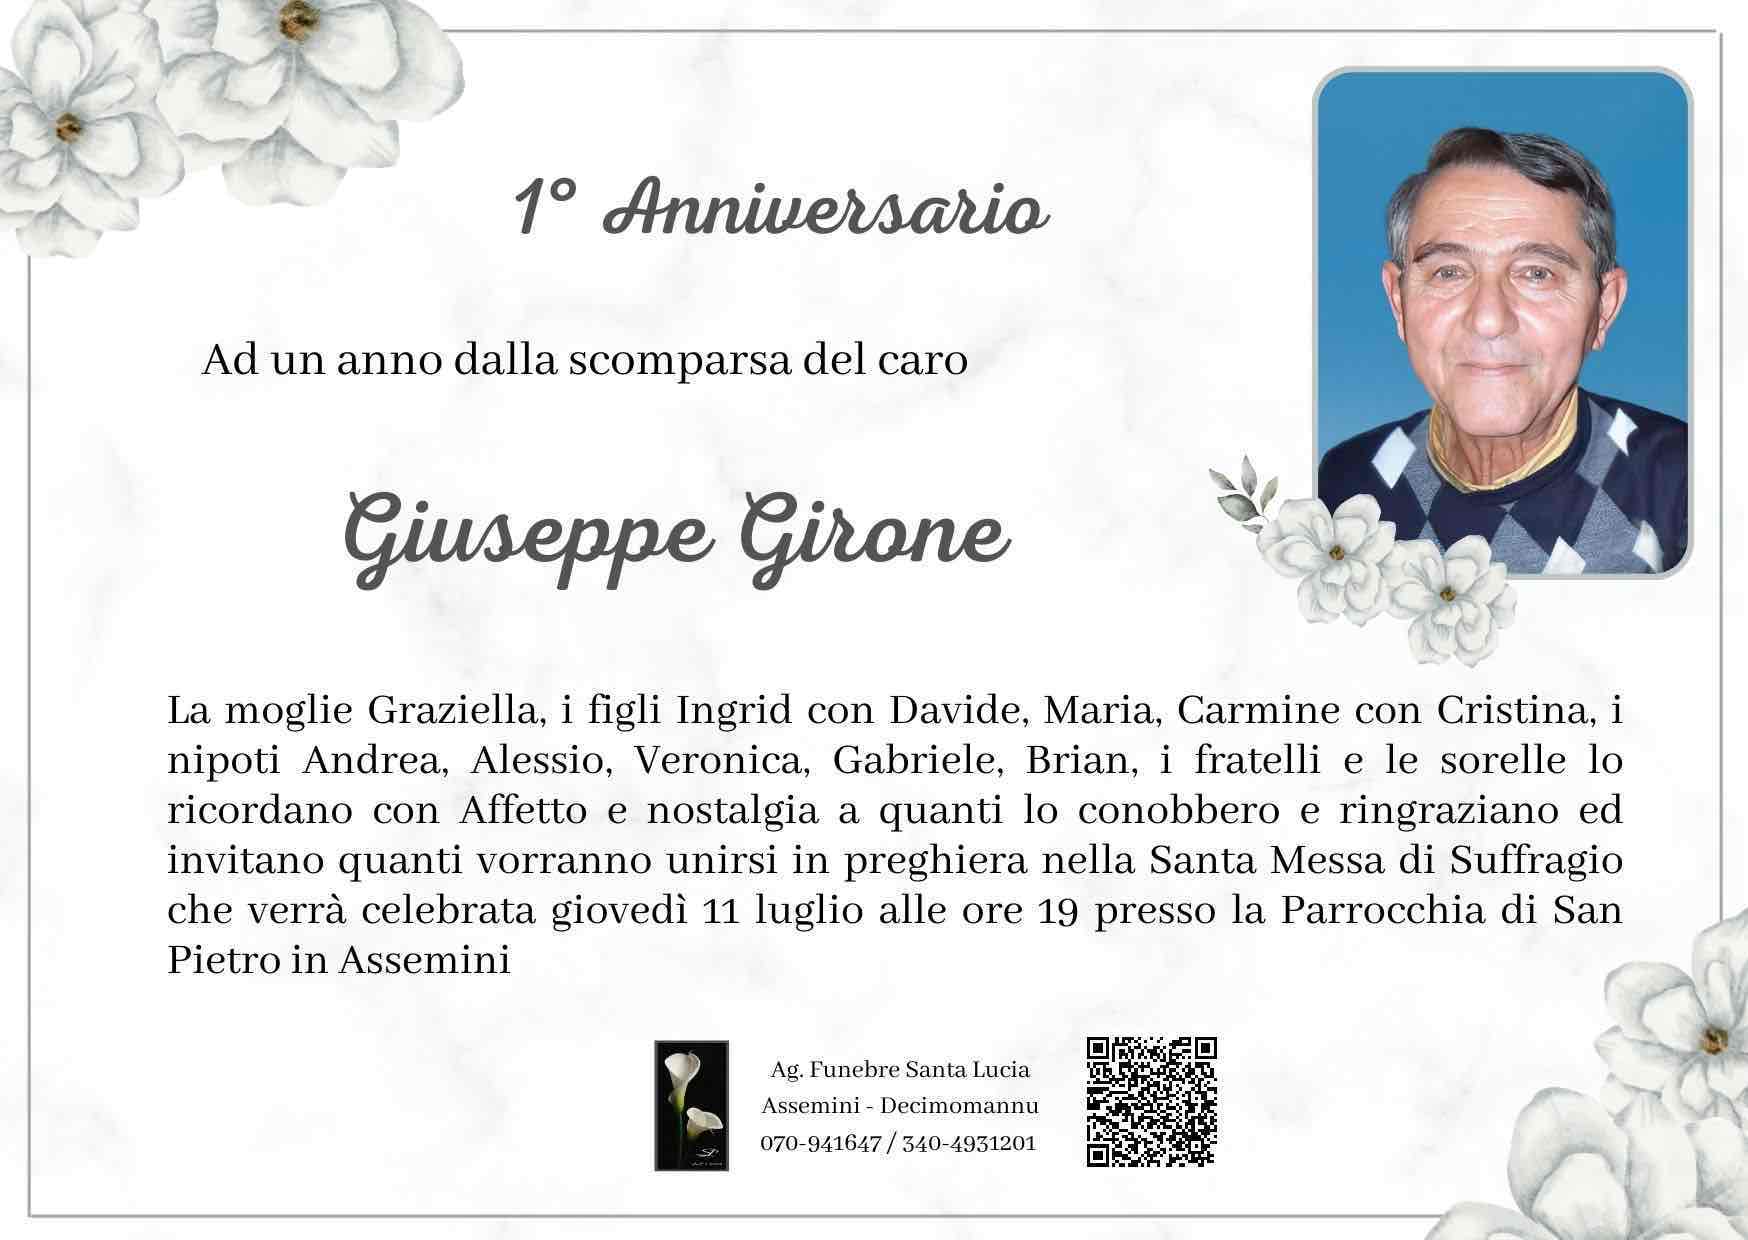 Giuseppe Girone